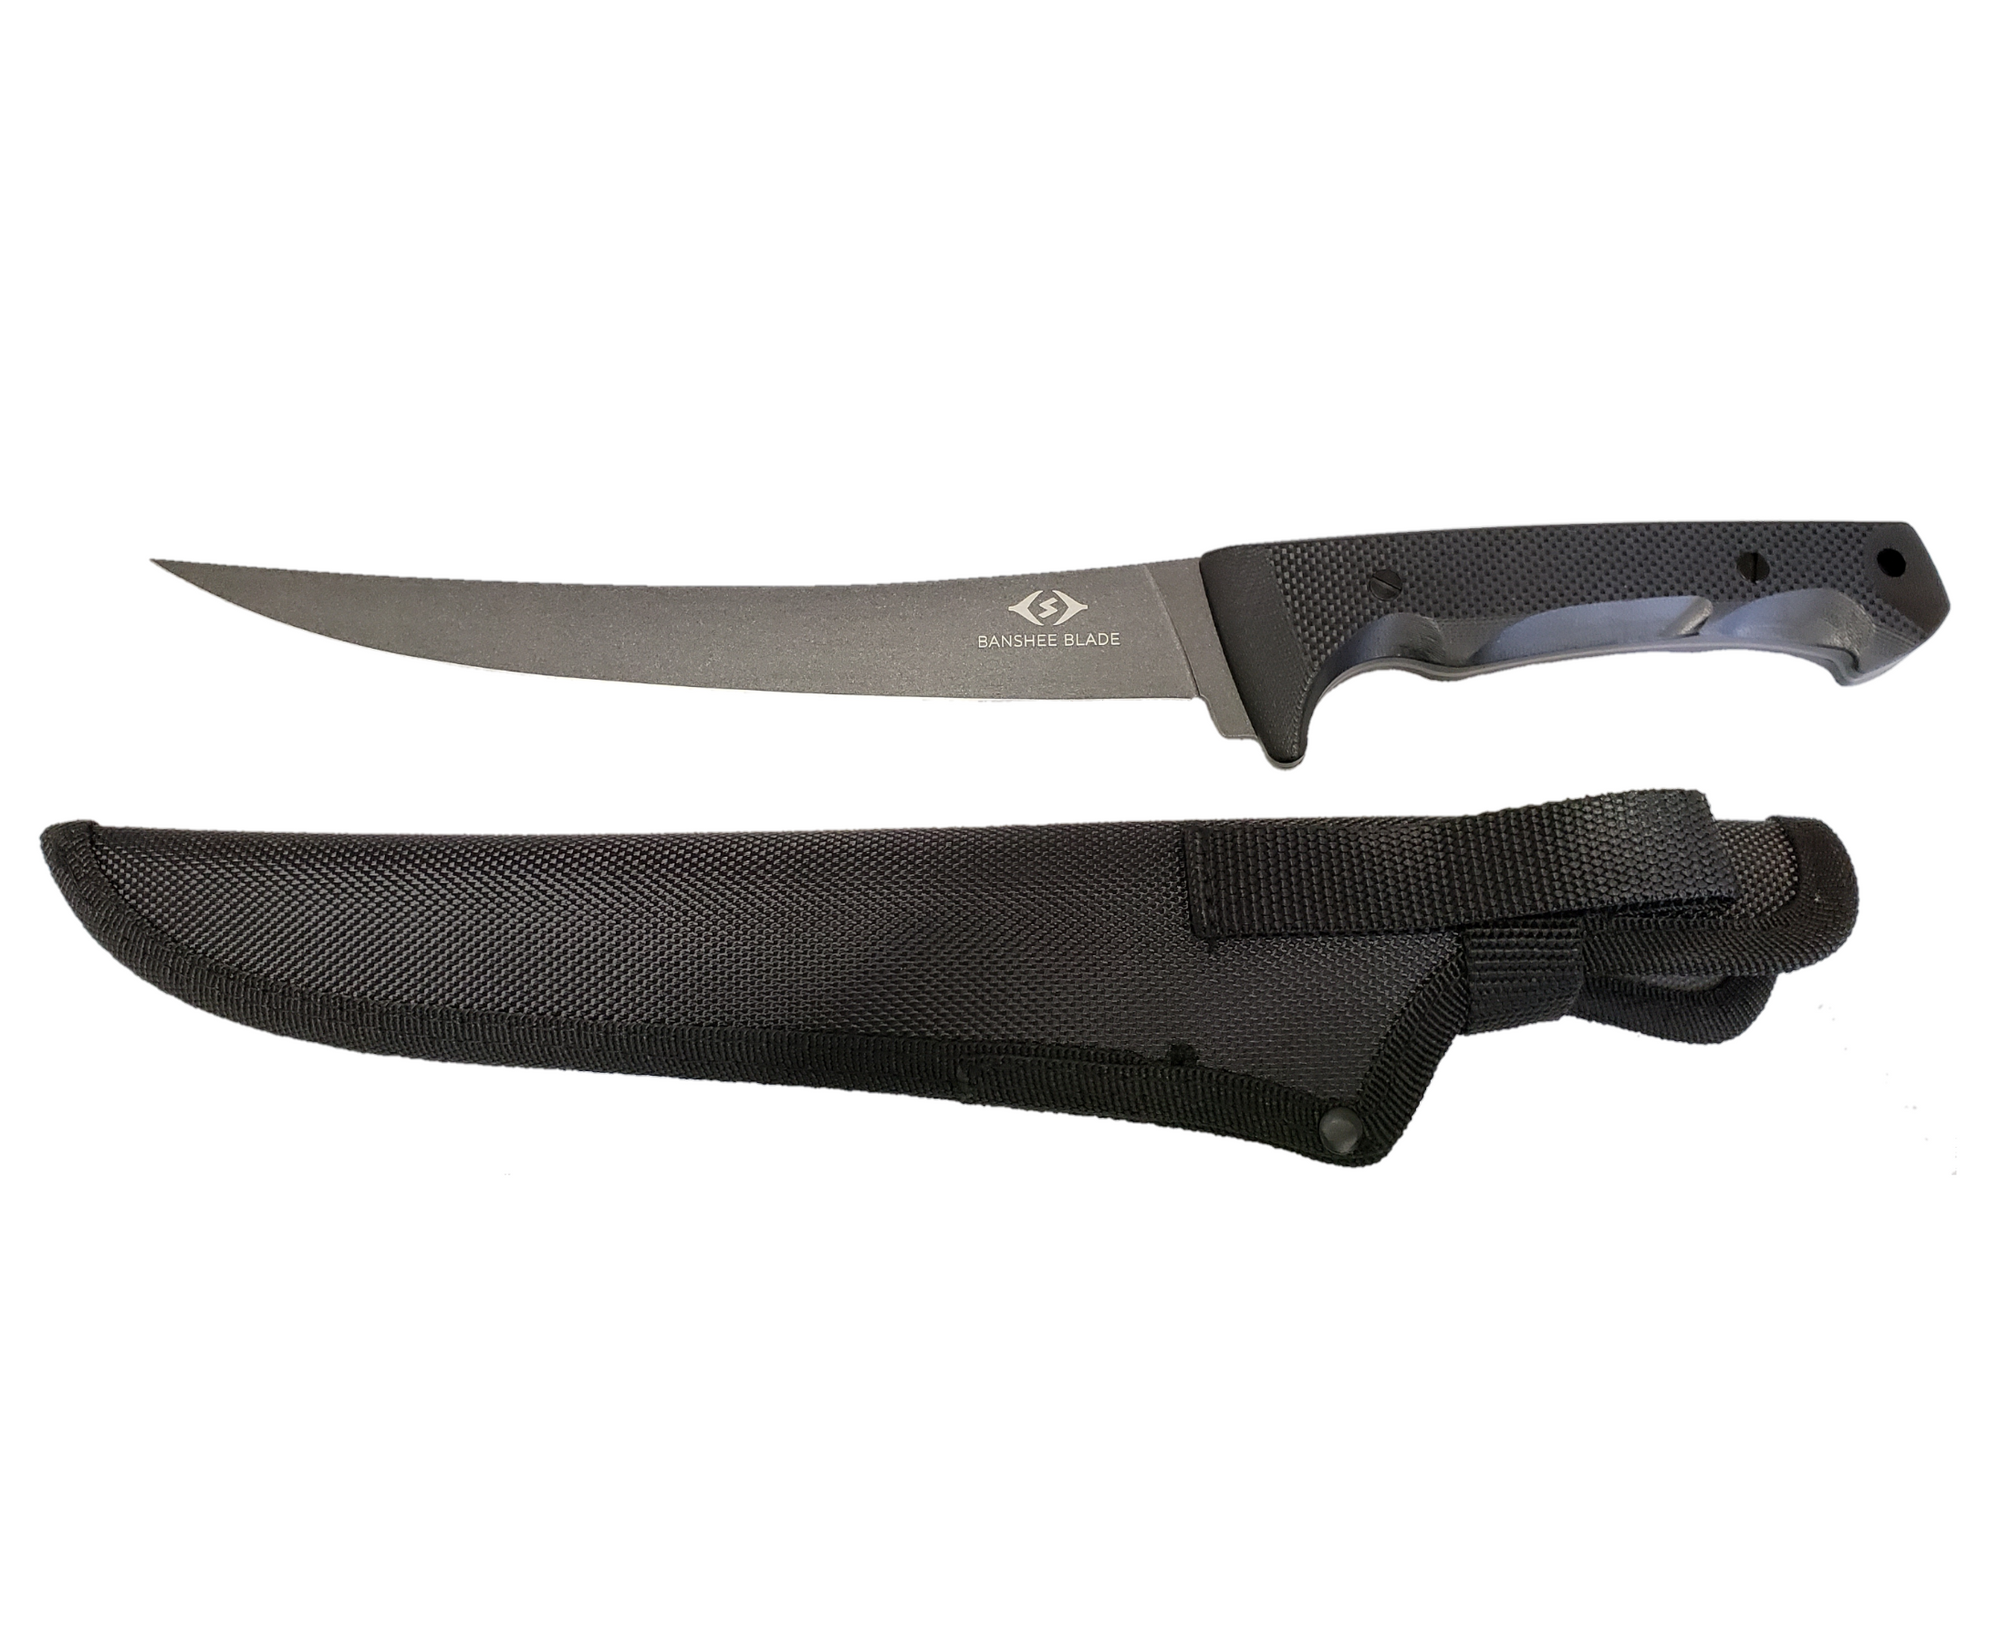 SpearPro Banshee Blade 7" - FLEX Fillet Knife